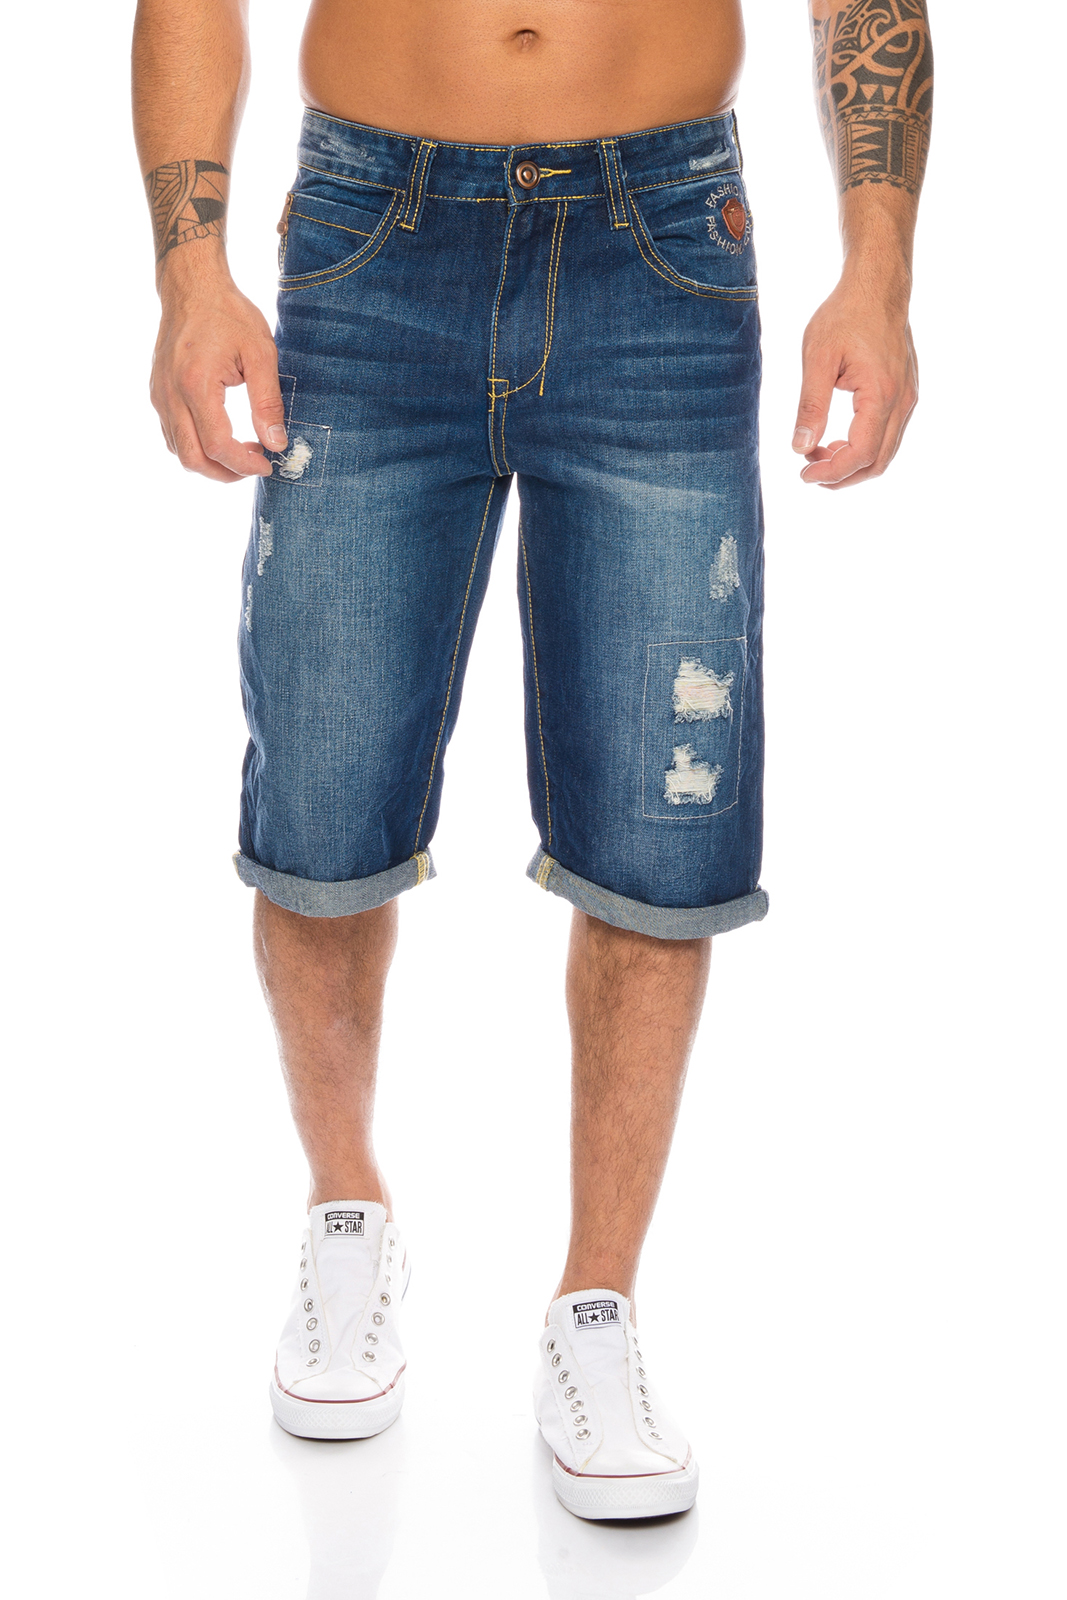 Designer Herren Jeans Shorts Herren Bermuda Jeanshose Herren Short H-068 W28-W38